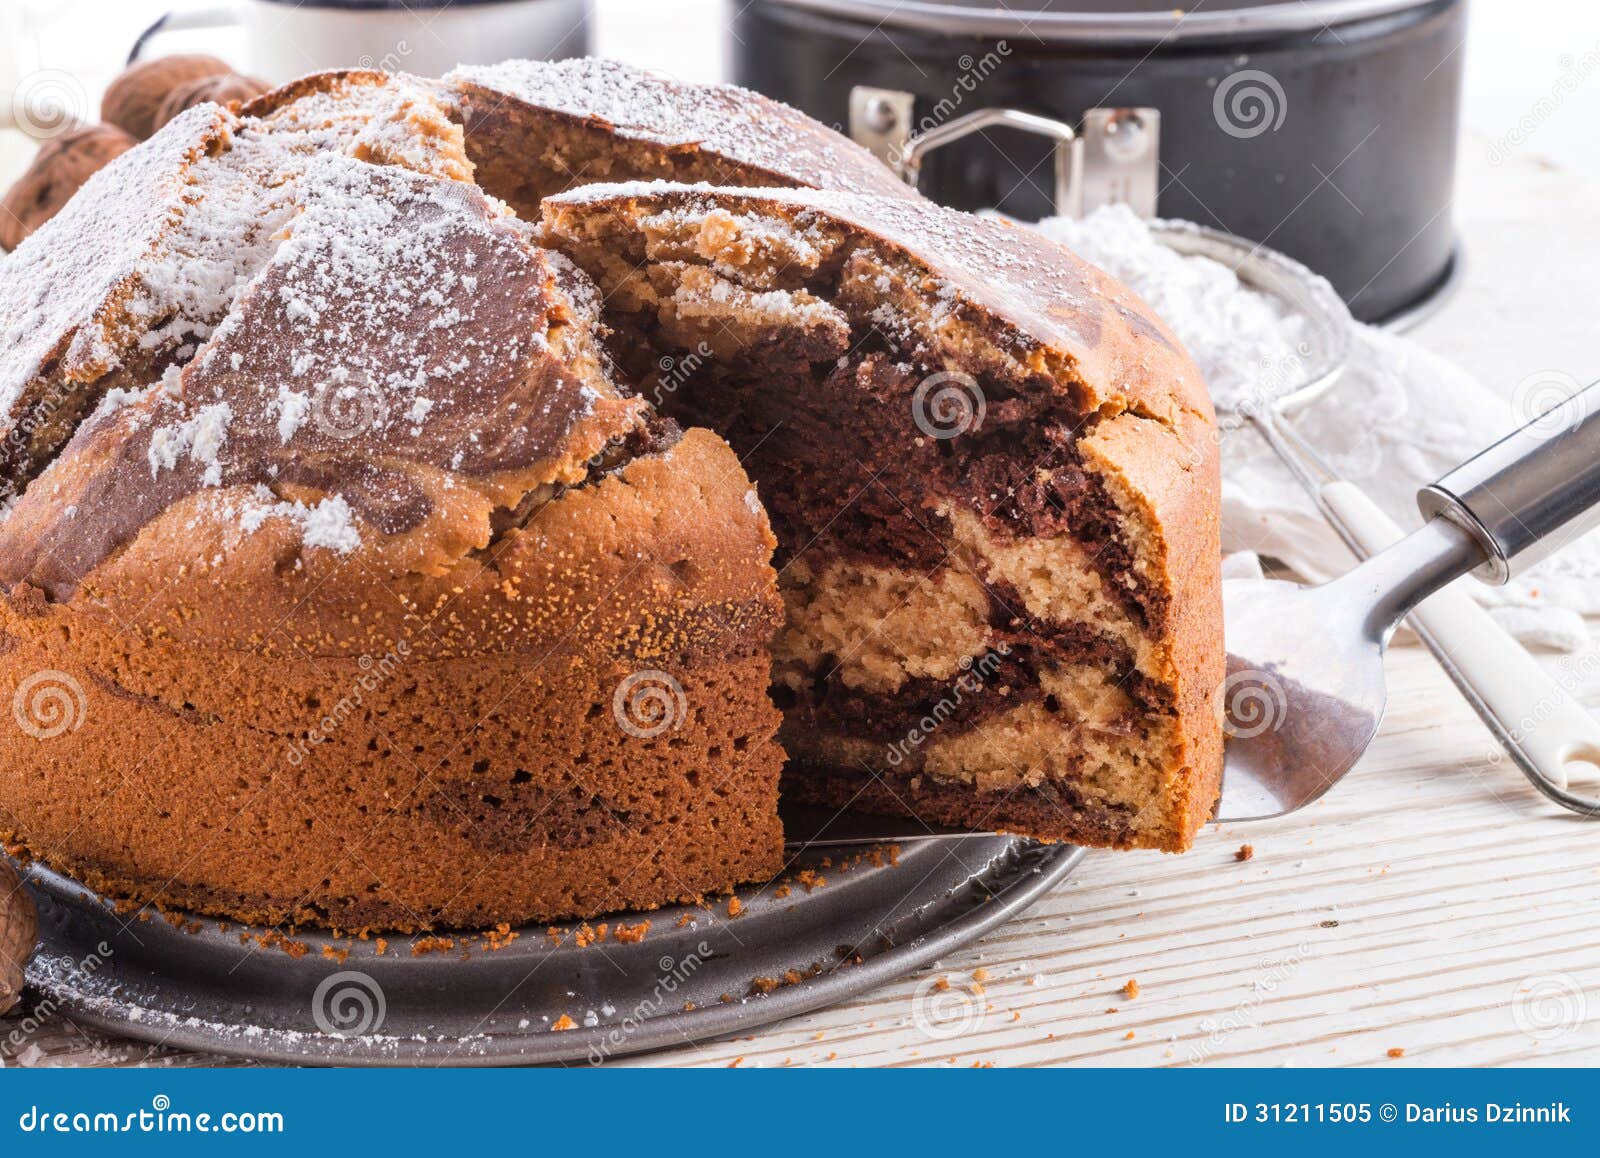 大理石花纹蛋糕 库存照片. 图片 包括有 制作, 海绵, 生日, 点心, 苏斯, 甜甜, 蛋糕, 杯形蛋糕 - 54628396